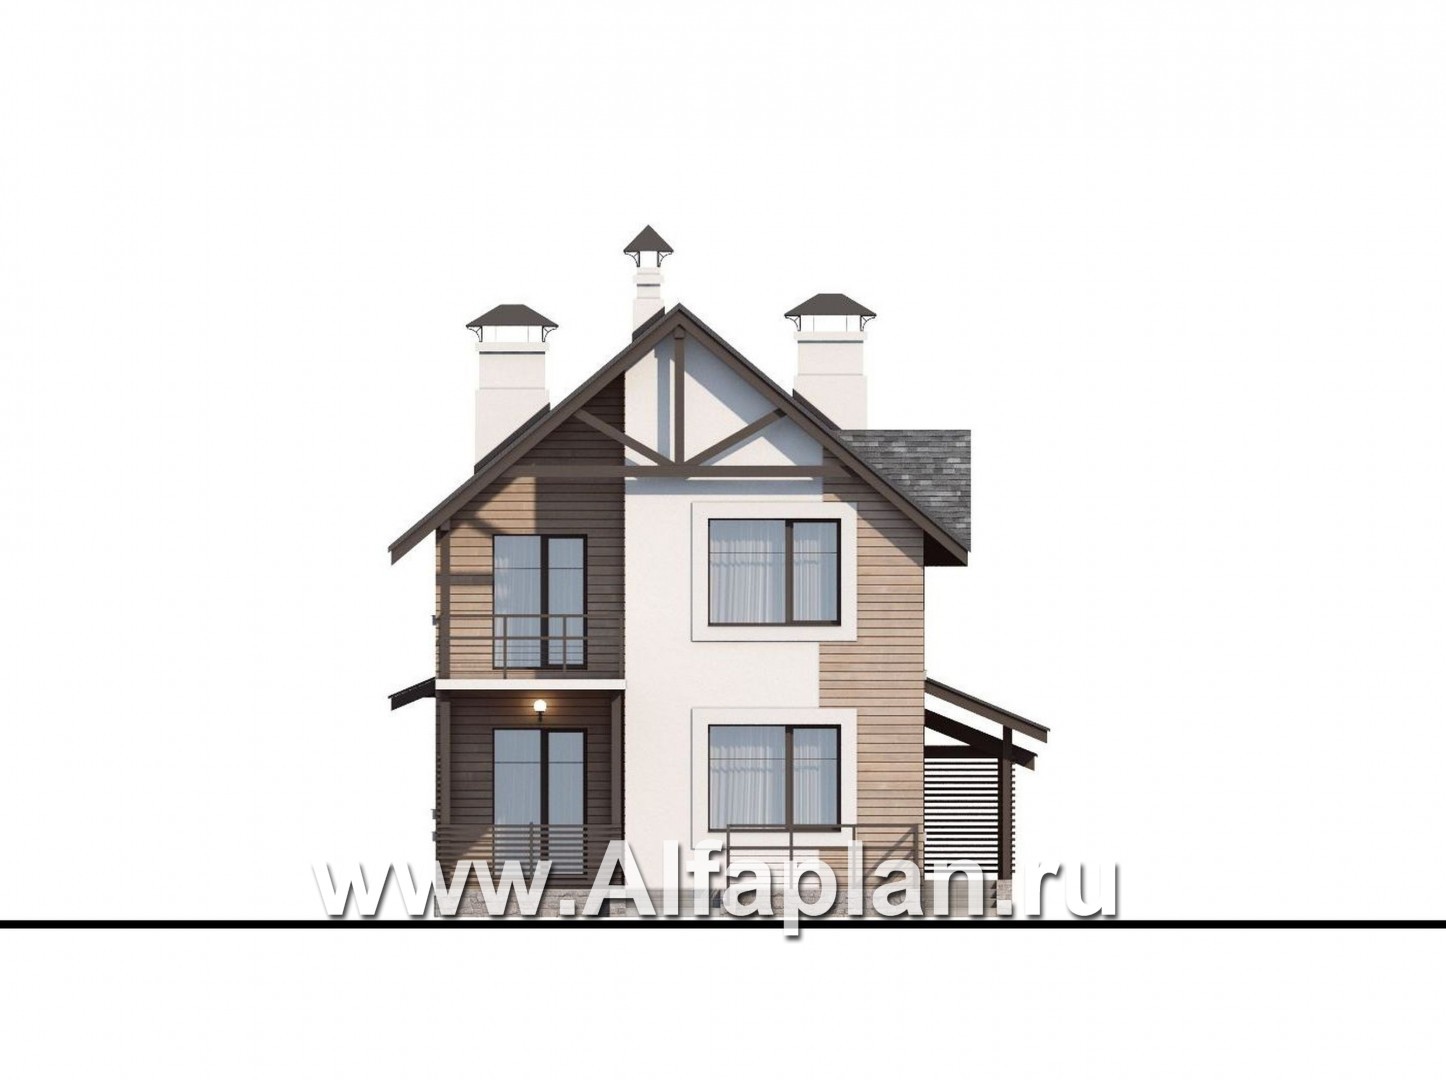 «Гольфстрим» - проект дома с мансардой в скандинавском стиле, с террасой и навесом на 2 авто, для узкого участка - фасад дома